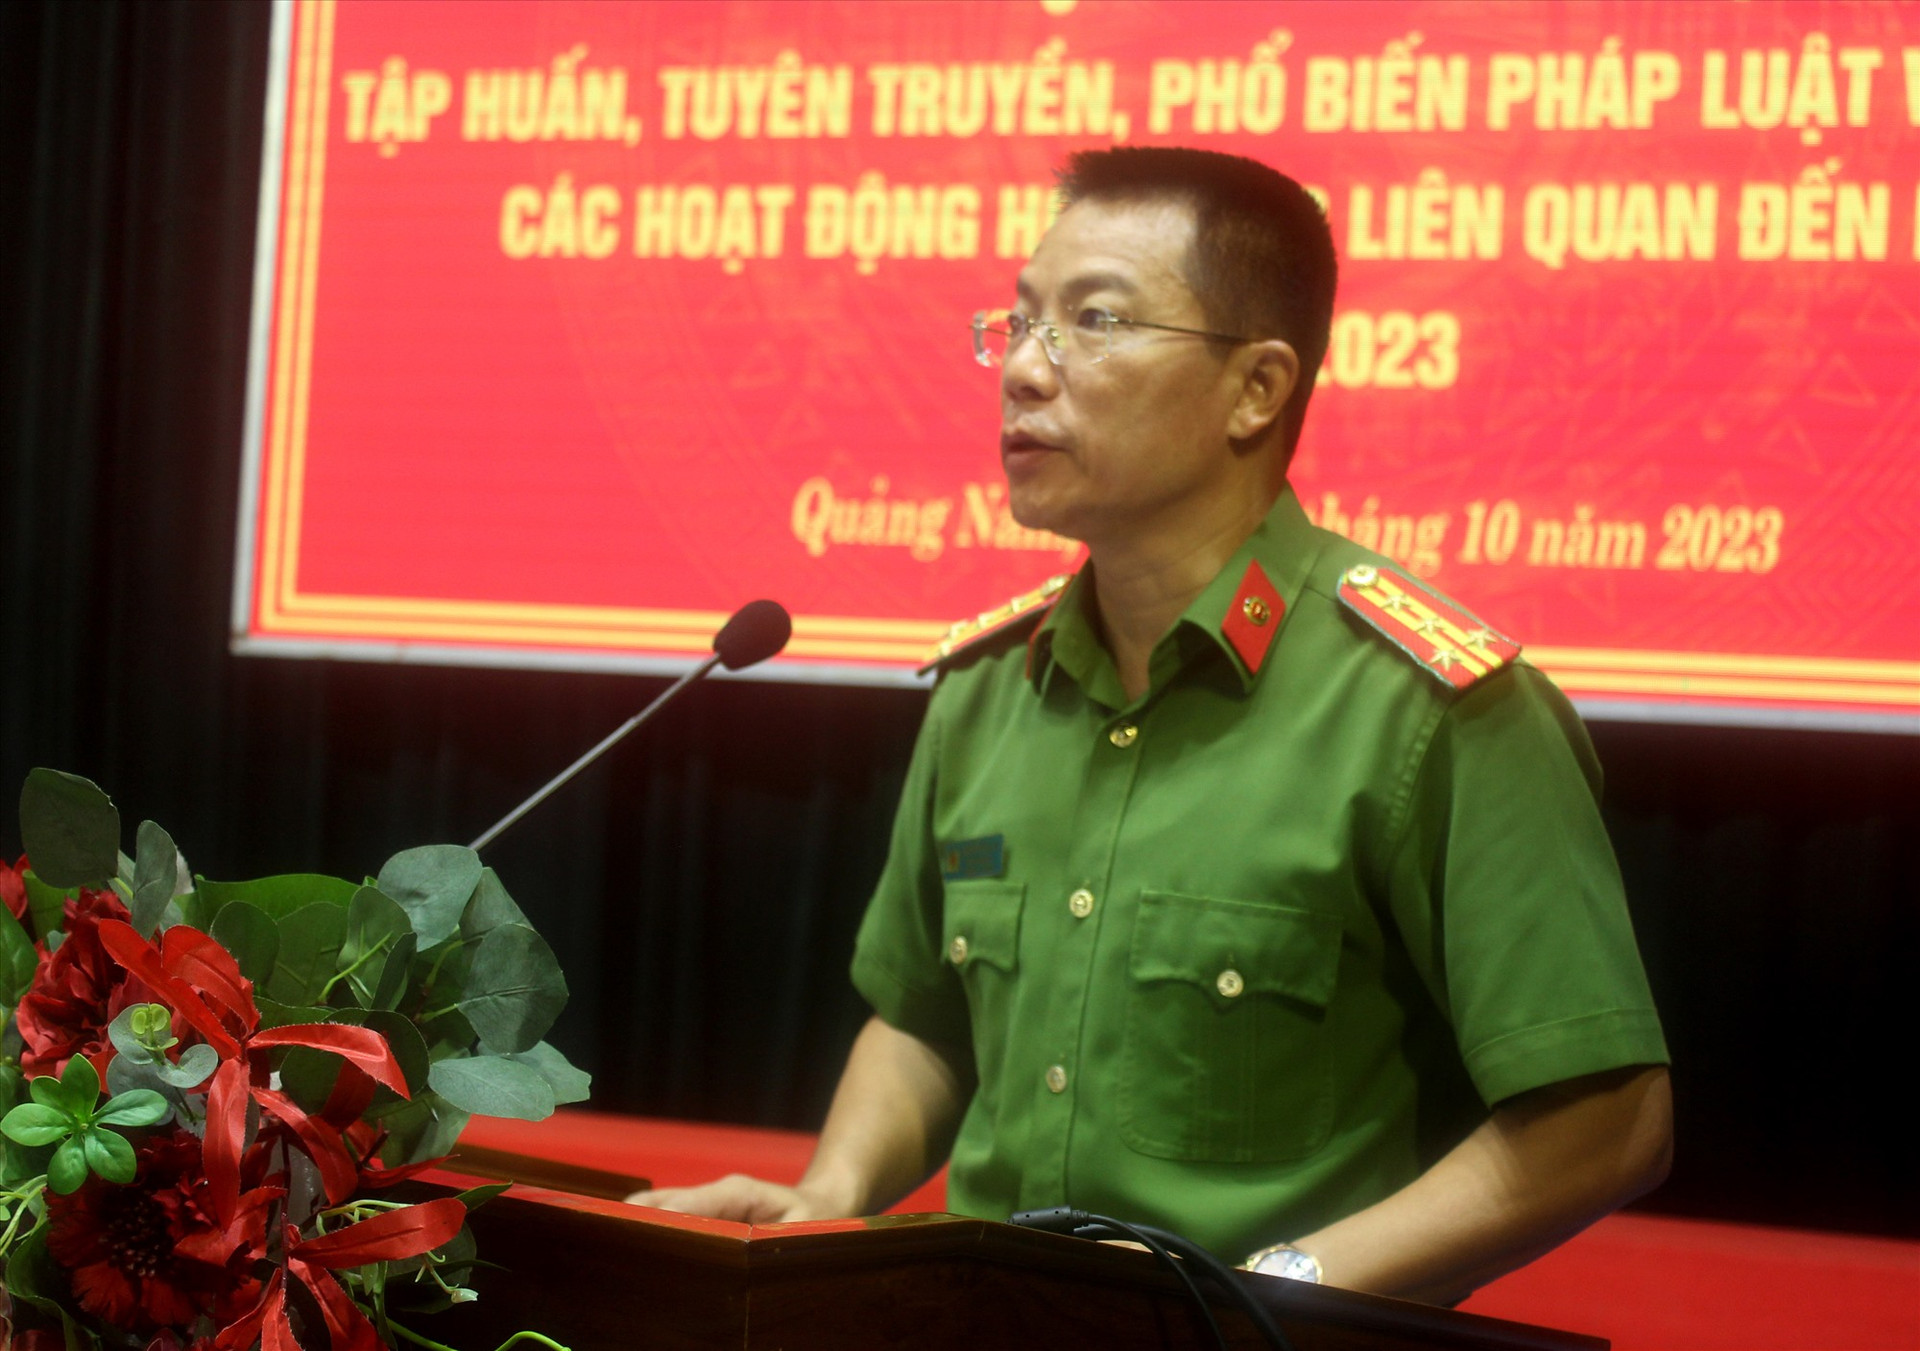 Đại tá Nguyễn Hà Lai - Phó Giám đốc Công an Quảng Nam phát biểu khai mạc tại hội nghị.